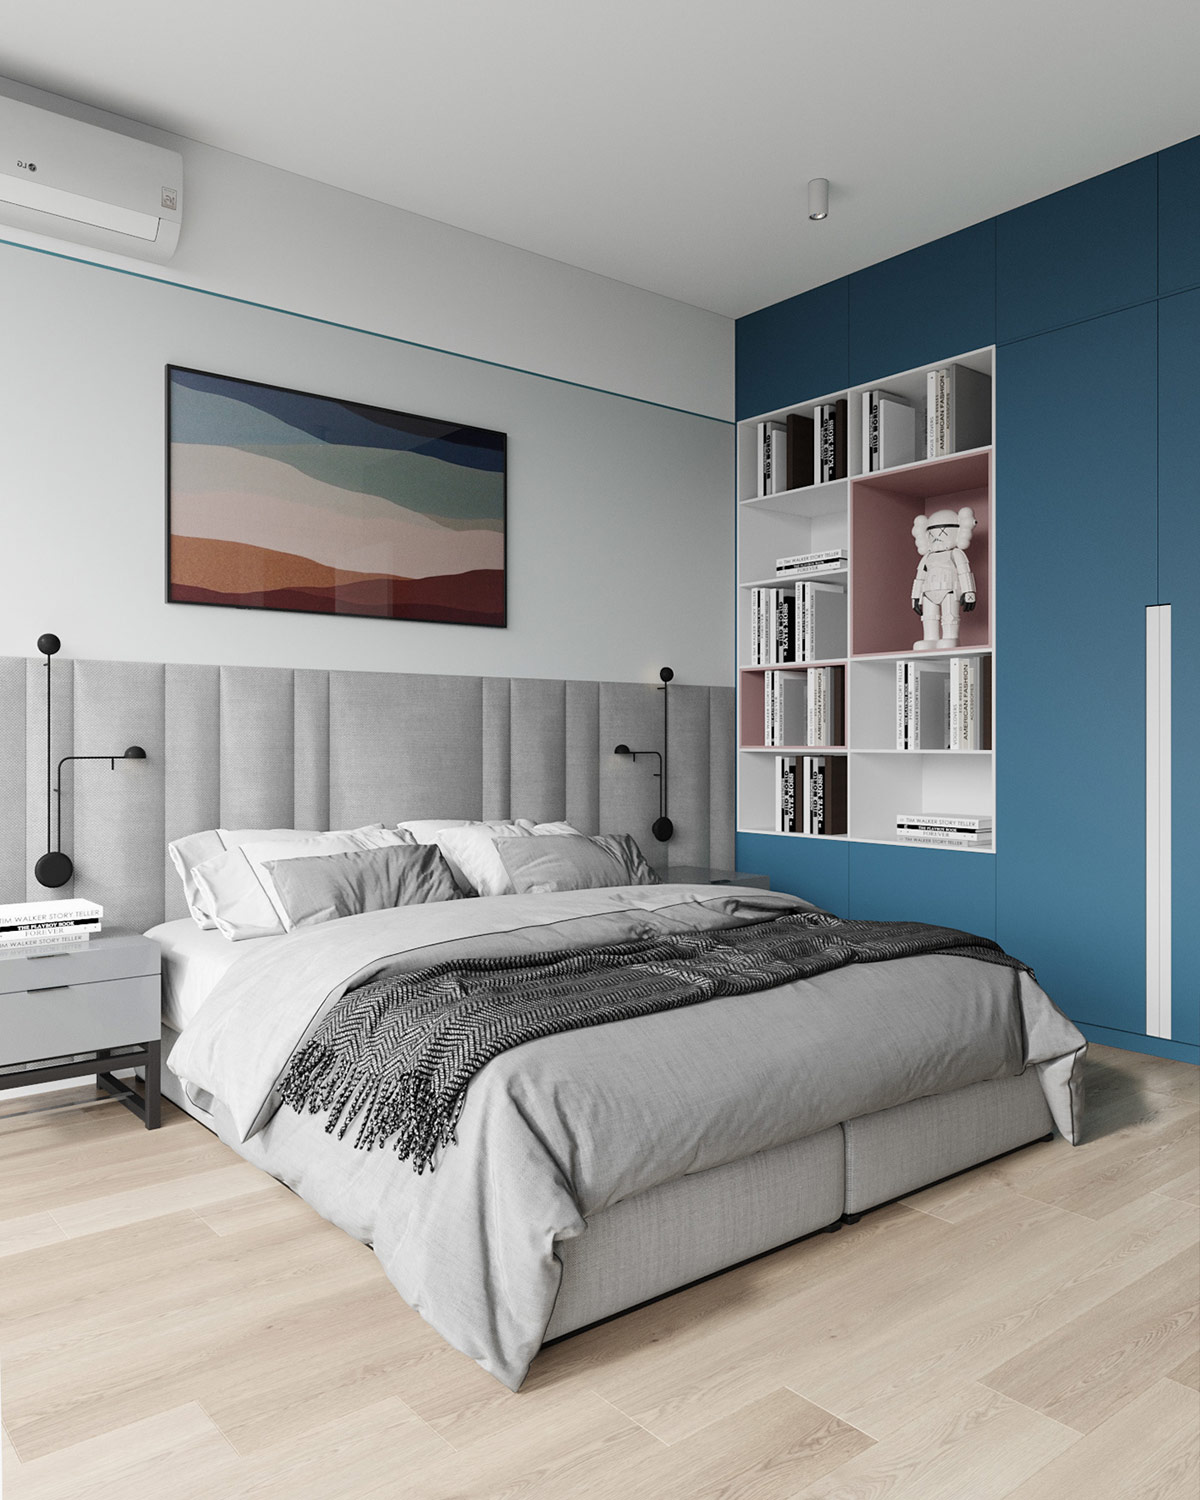 Phòng ngủ là không gian thể hiện rõ nhất sự kết hợp của hai gam màu này. Từ bức tranh trang trí đầu giường cho đến tủ quần áo sơn màu xanh tích hợp những ô kệ mở lưu trữ màu hồng và trắng xen kẽ mang đến cái nhìn trẻ trung và tươi sáng.